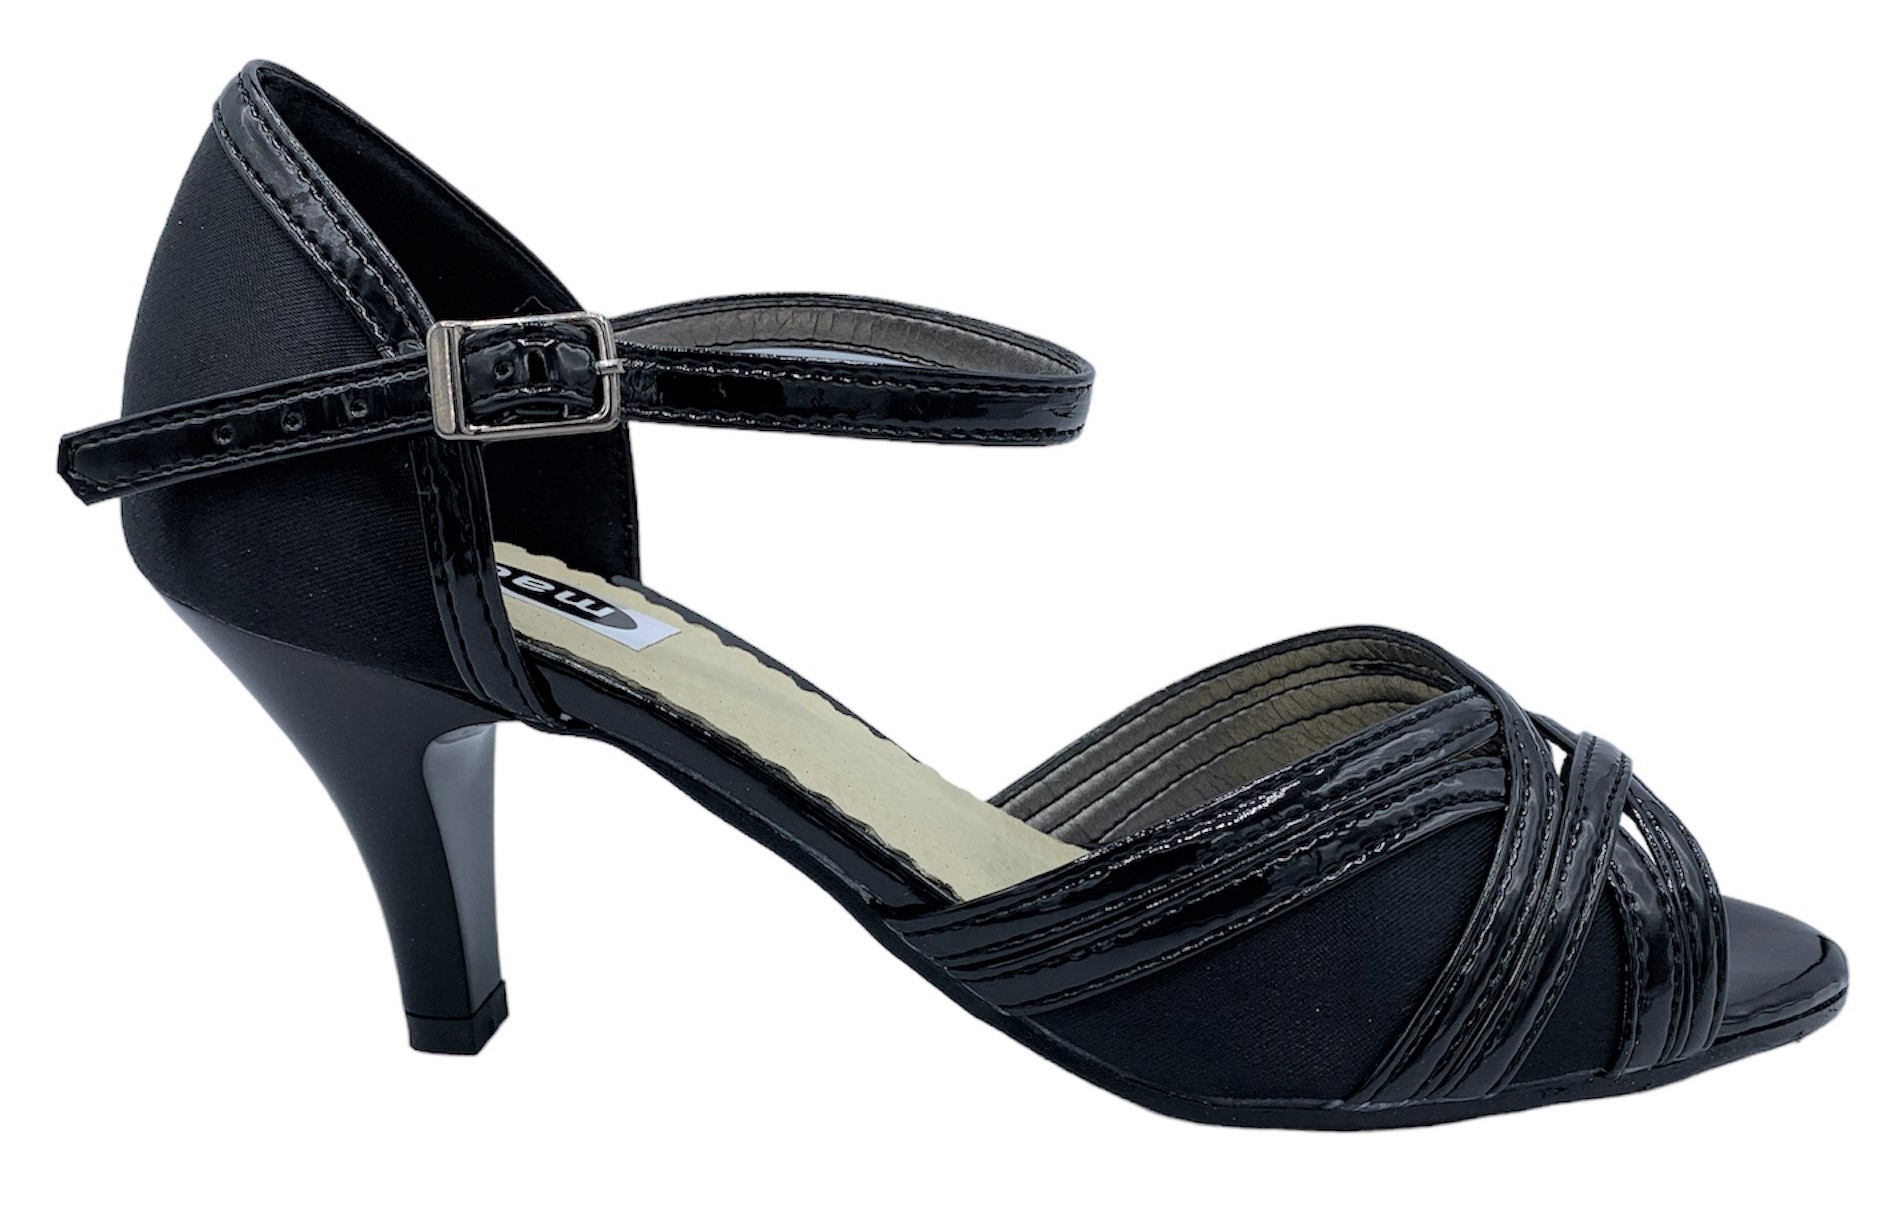 Dámská společenská obuv Madler 145-SL černá Velikost: 37 (EU)